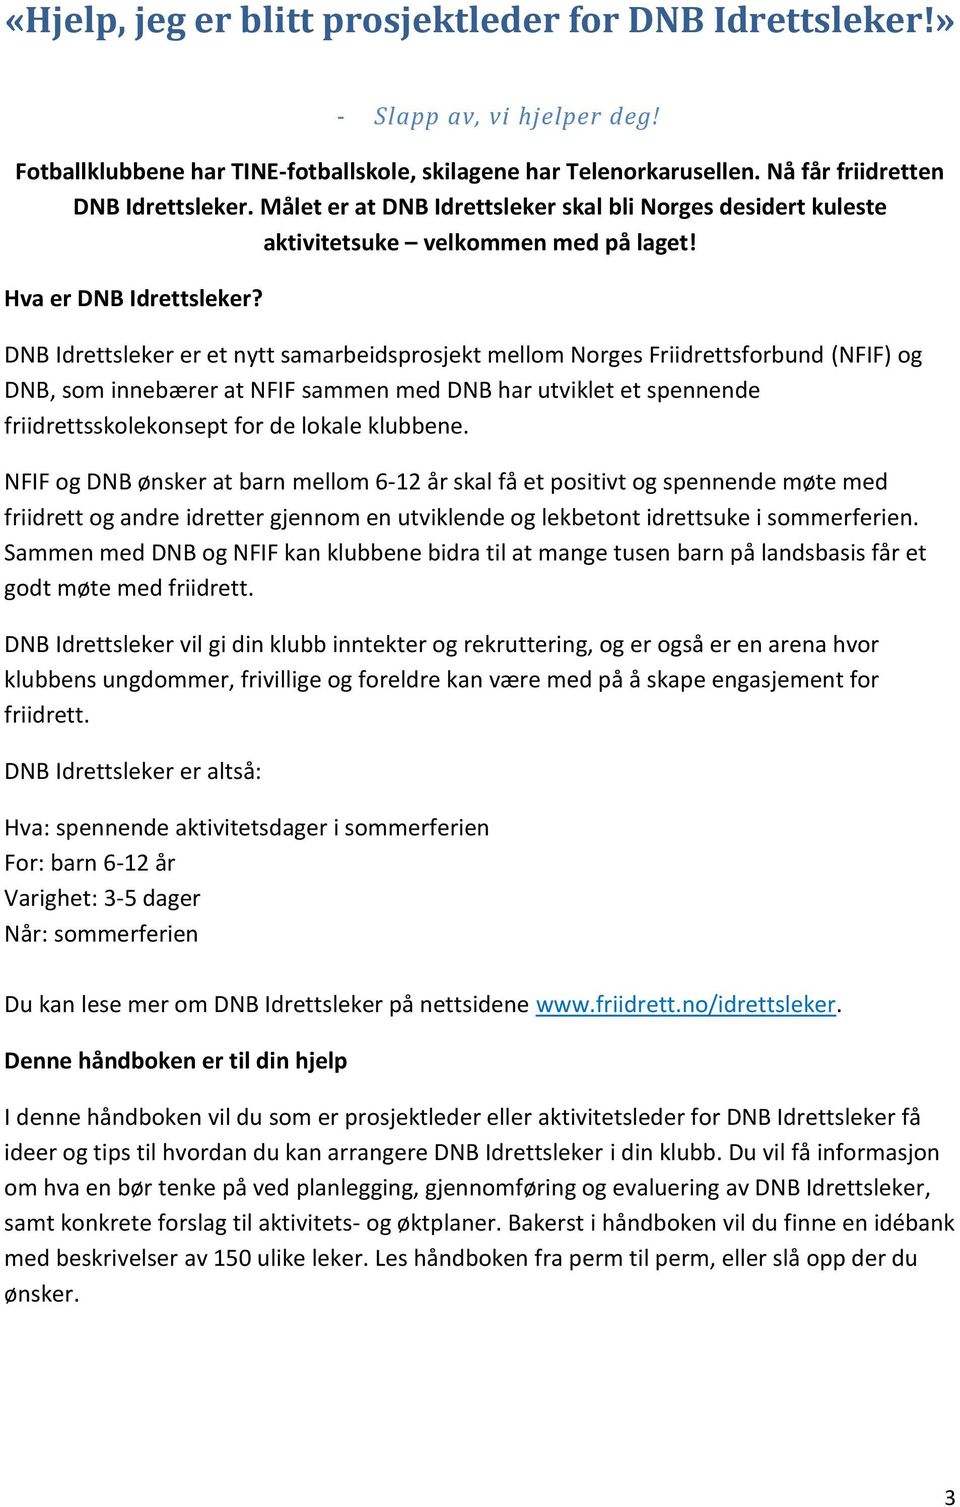 DNB Idrettsleker er et nytt samarbeidsprosjekt mellom Norges Friidrettsforbund (NFIF) og DNB, som innebærer at NFIF sammen med DNB har utviklet et spennende friidrettsskolekonsept for de lokale